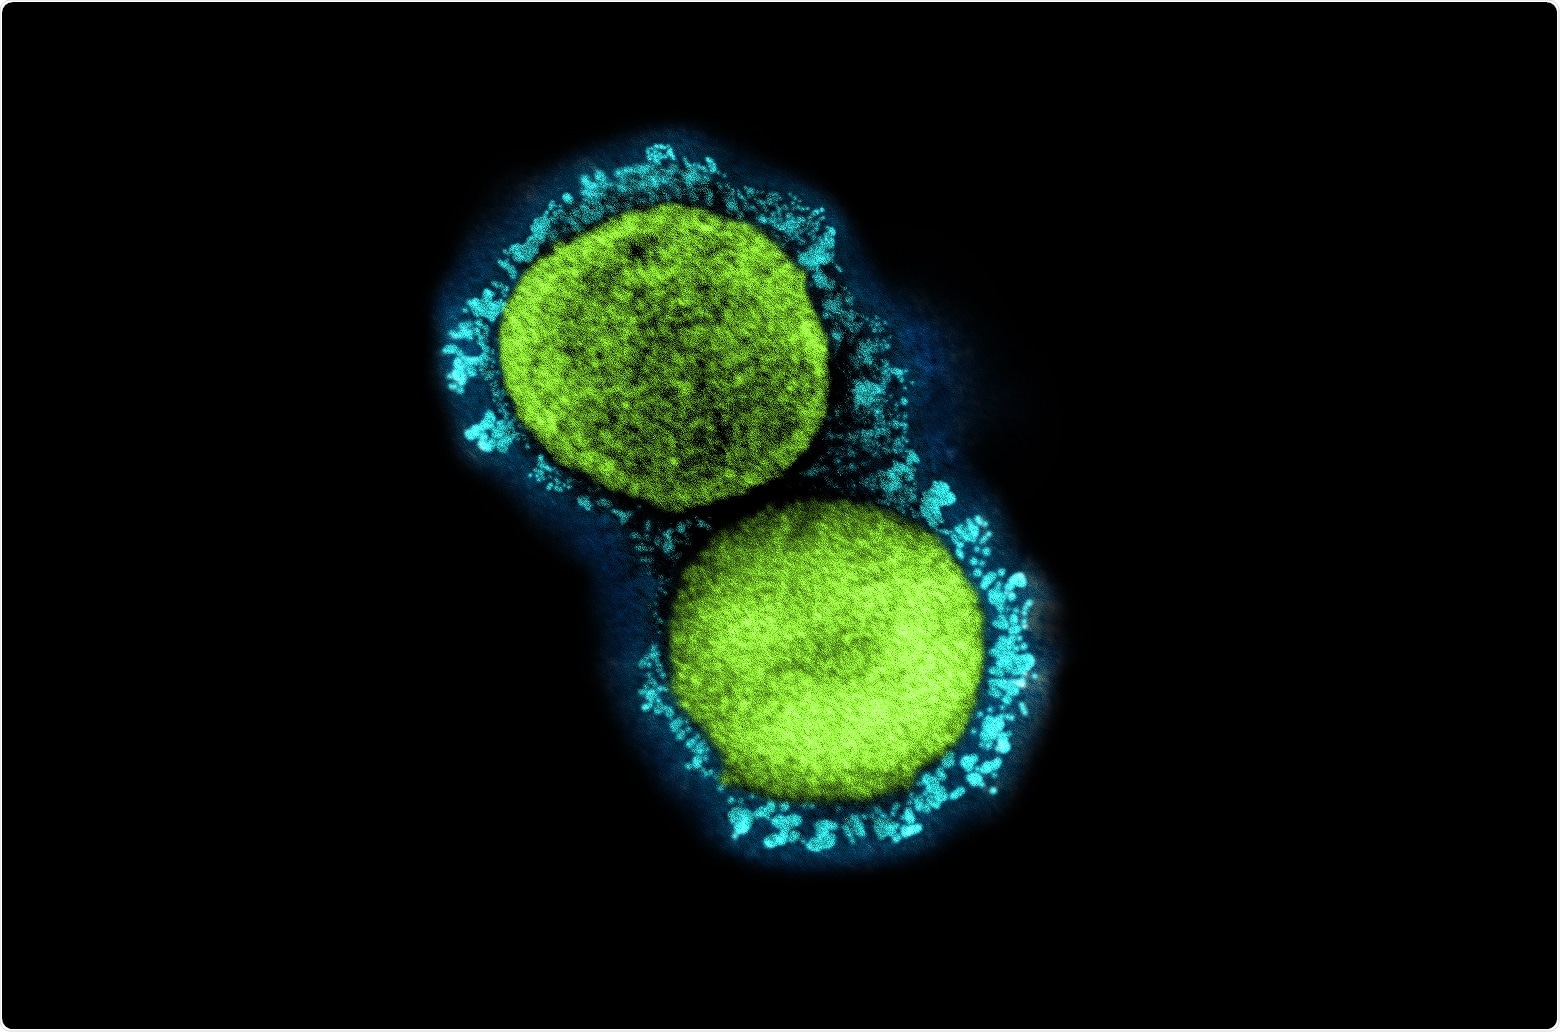 Estudio: Inmunidad heteróloga protectora del linfocito T en COVID-19 inducido por el MMR y los antígenos de la vacuna de Tdap. Haber de imagen: NIAID